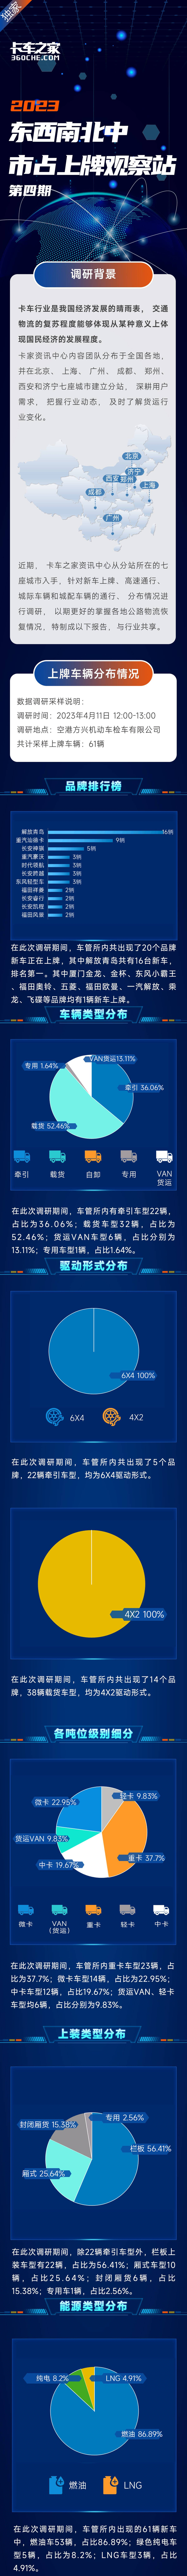 东南西北中 市占上牌观察站:北京上牌-4 中重卡数量明显增加